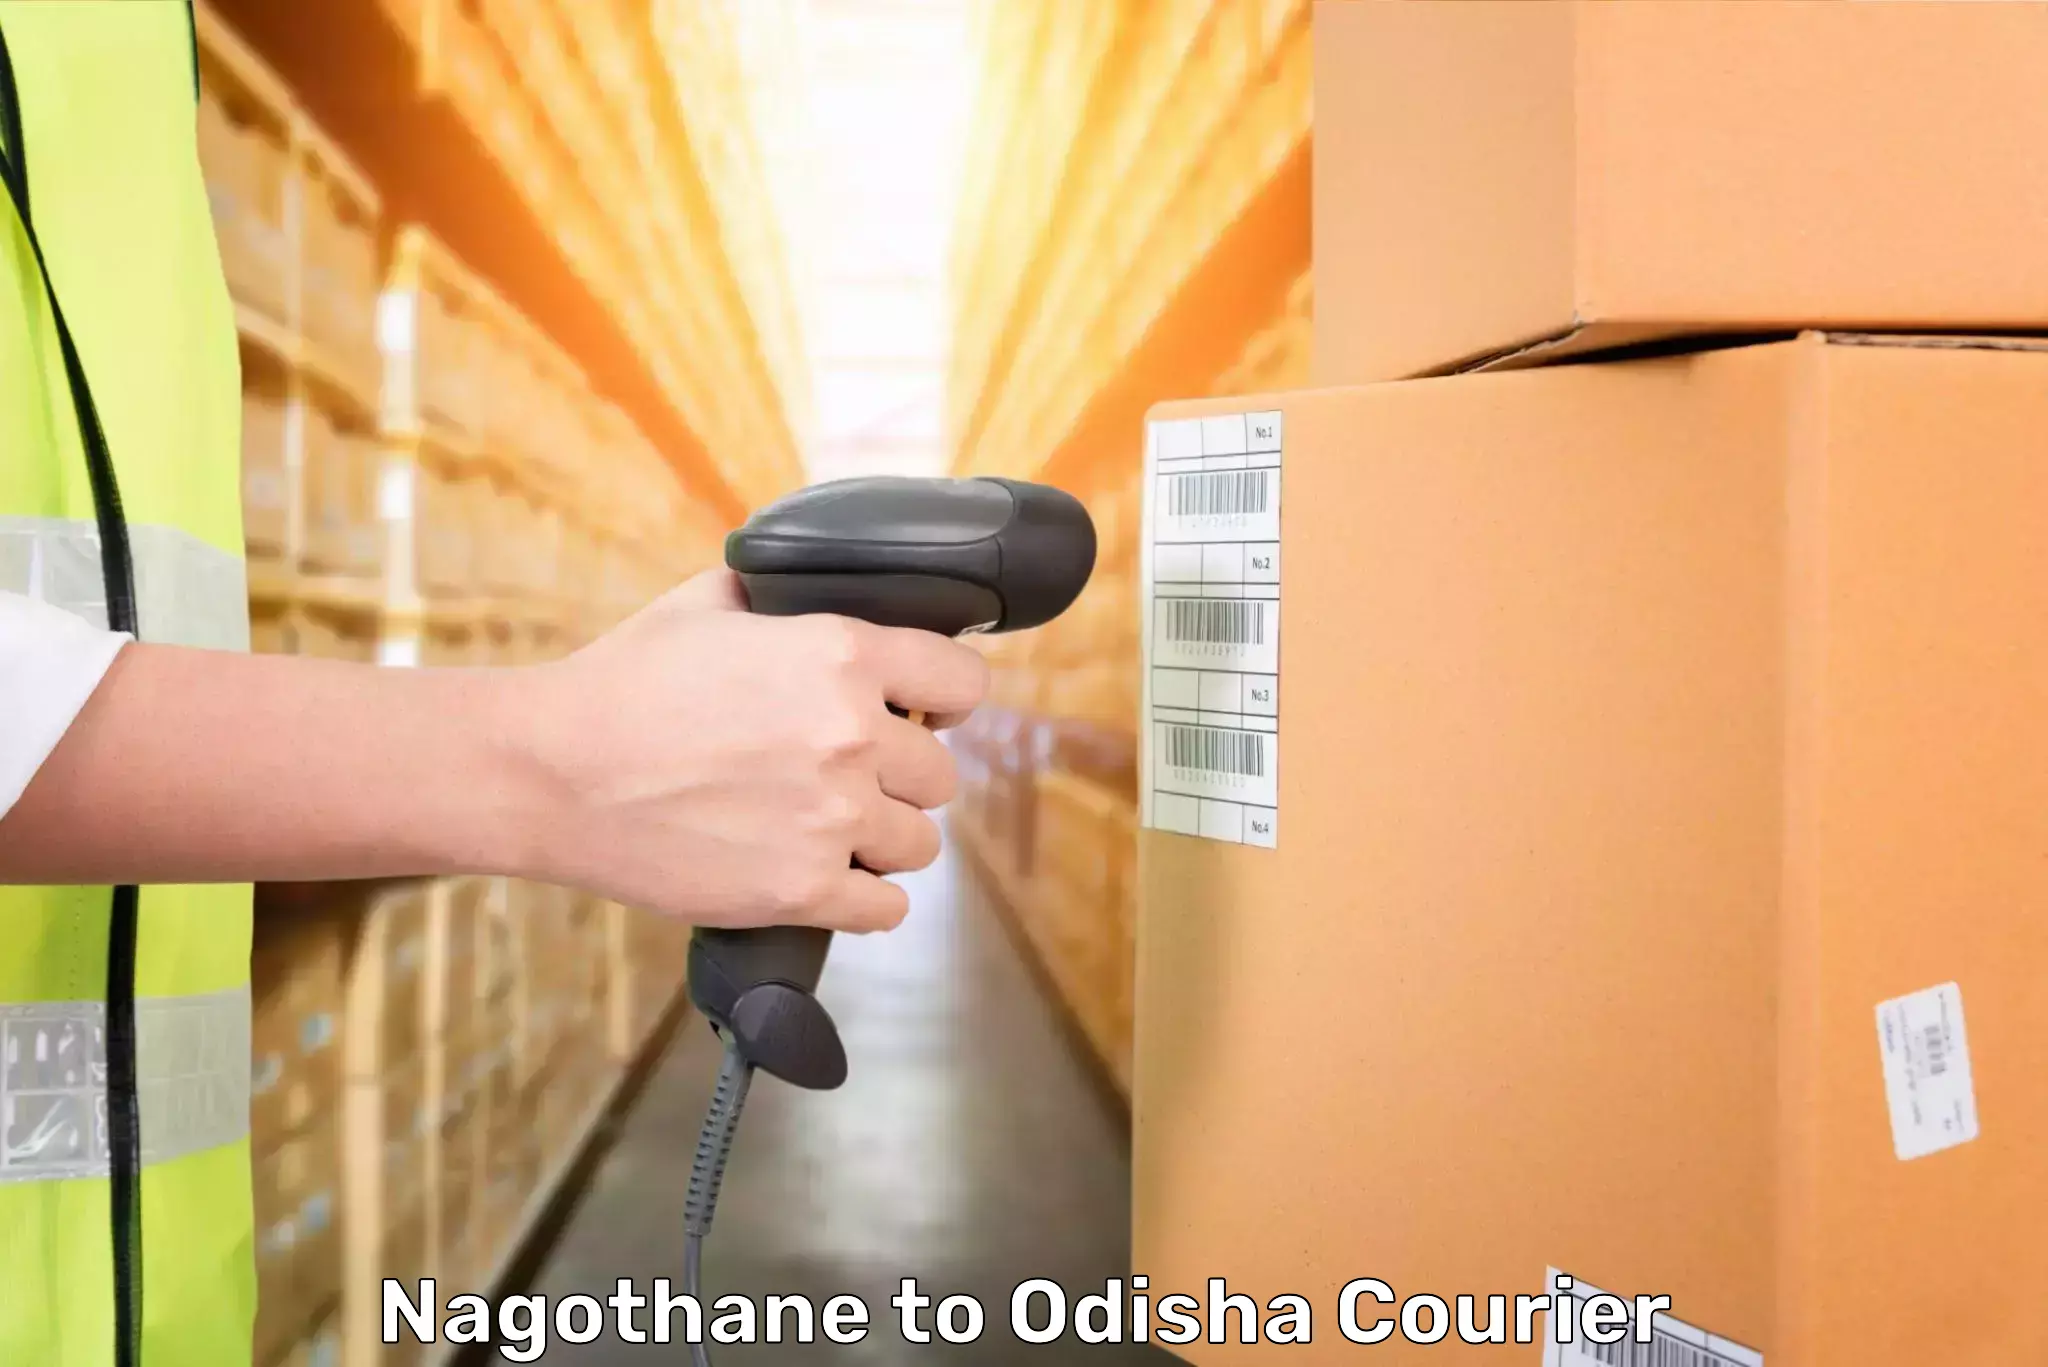 Door-to-door baggage service Nagothane to Odisha